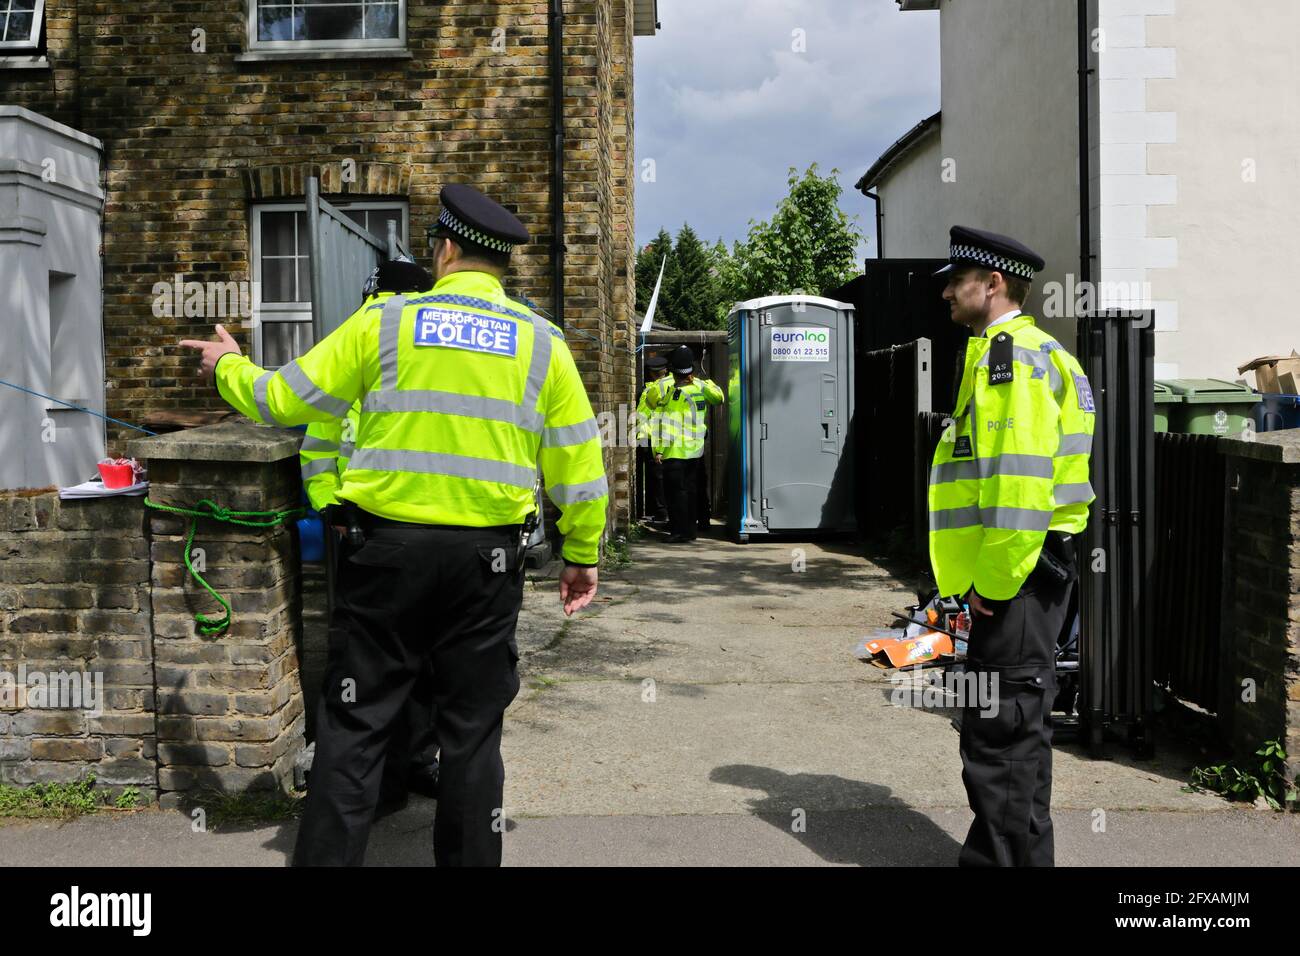 Londra (UK), 26 maggio 2021: Le squadre di polizia continuano a sorvegliare la casa dove è stato ucciso Sasha Johnson, attivista nero per i diritti civili. Foto Stock